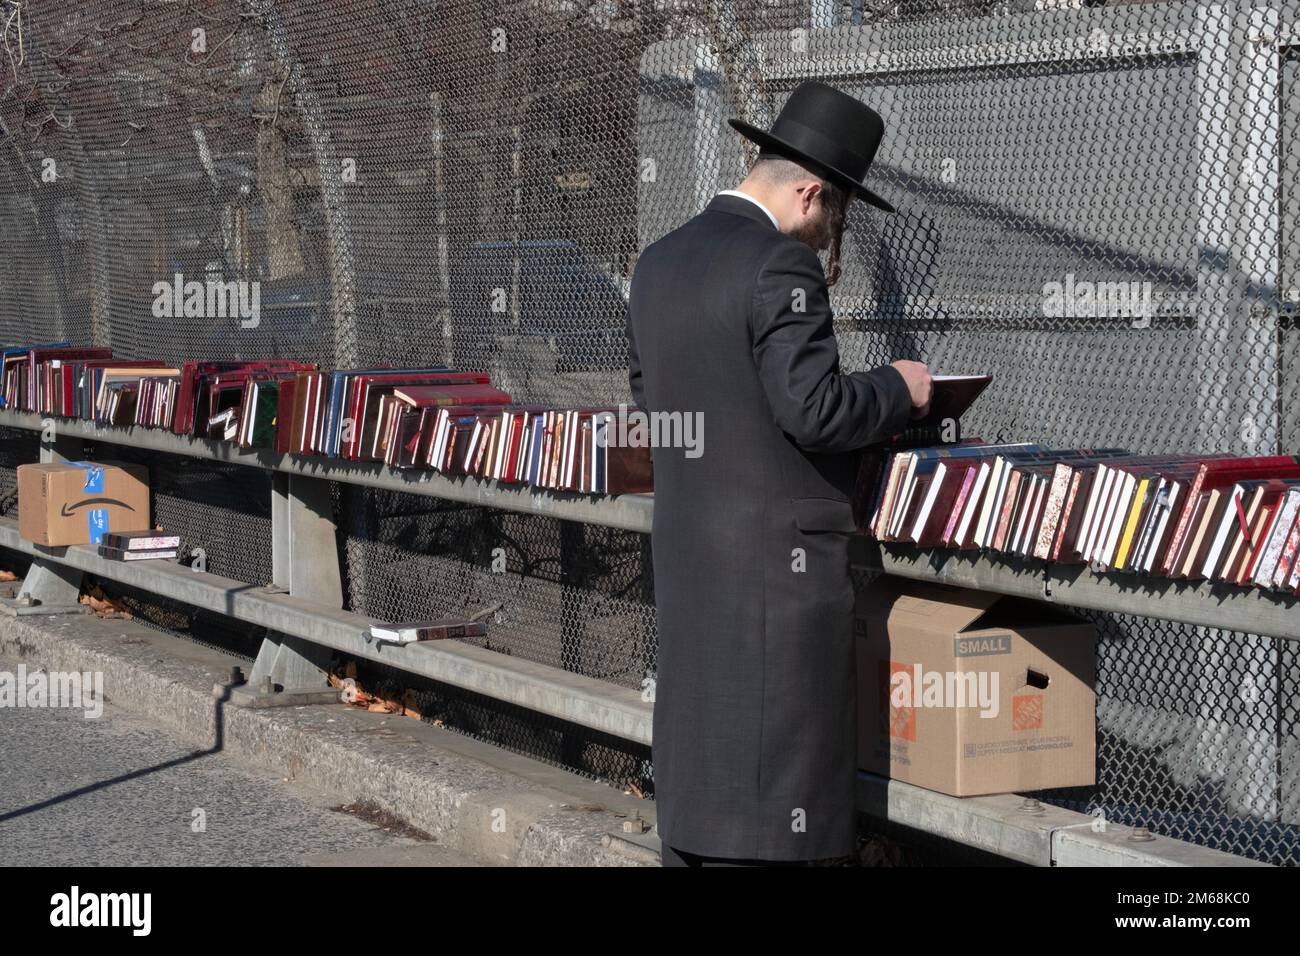 Ein chassidischer jüdischer Mann mit langen Peyus-Geschäften für religiöse Bücher in einem Pop-up-Geschäft in Brooklyn an einem milden Wintertag. Stockfoto